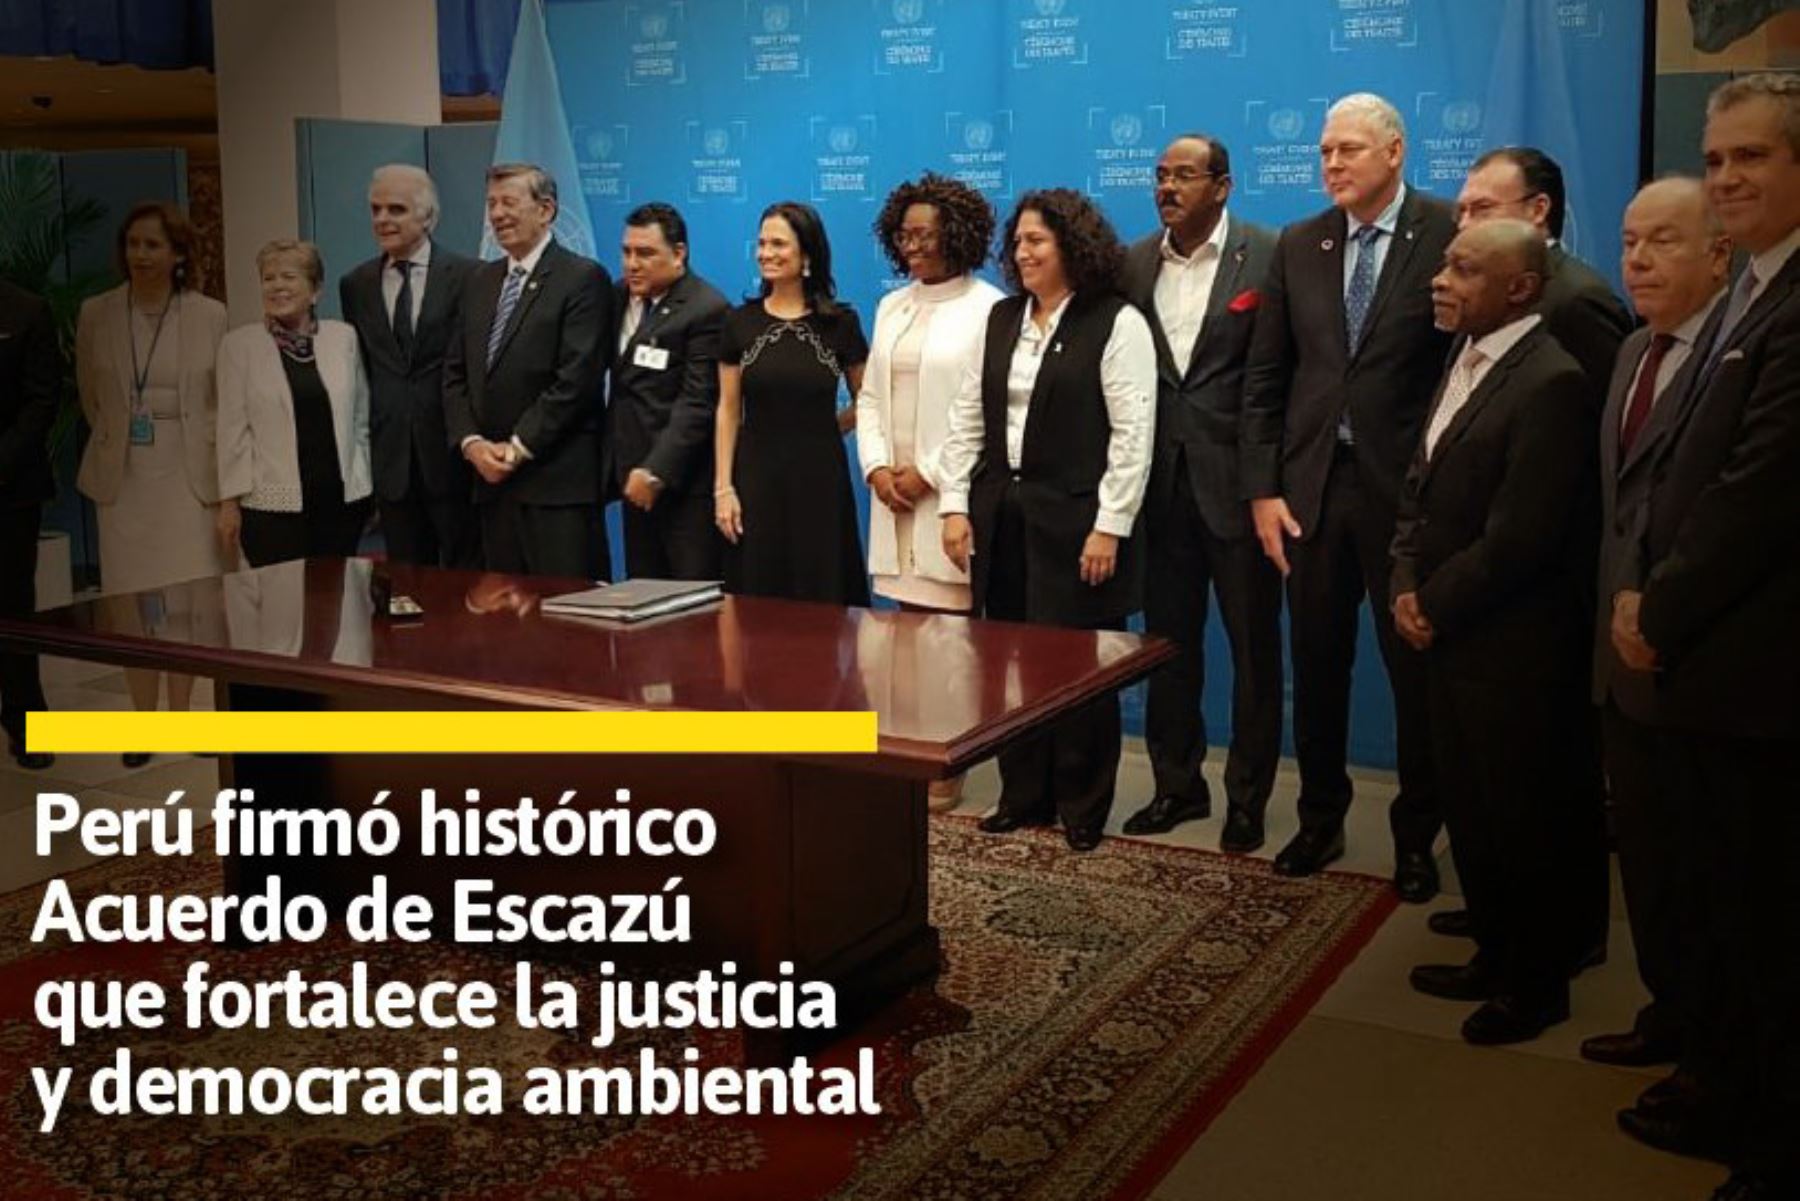 El Perú se adhirió oficialmente al Acuerdo Regional sobre Acceso a la Información, la Participación Pública y el Acceso a la Justicia en Asuntos Ambientales en América Latina y el Caribe, conocido como Acuerdo de Escazú. Se trata del primer tratado internacional que fortalecerá la democracia ambiental en esta parte del mundo.